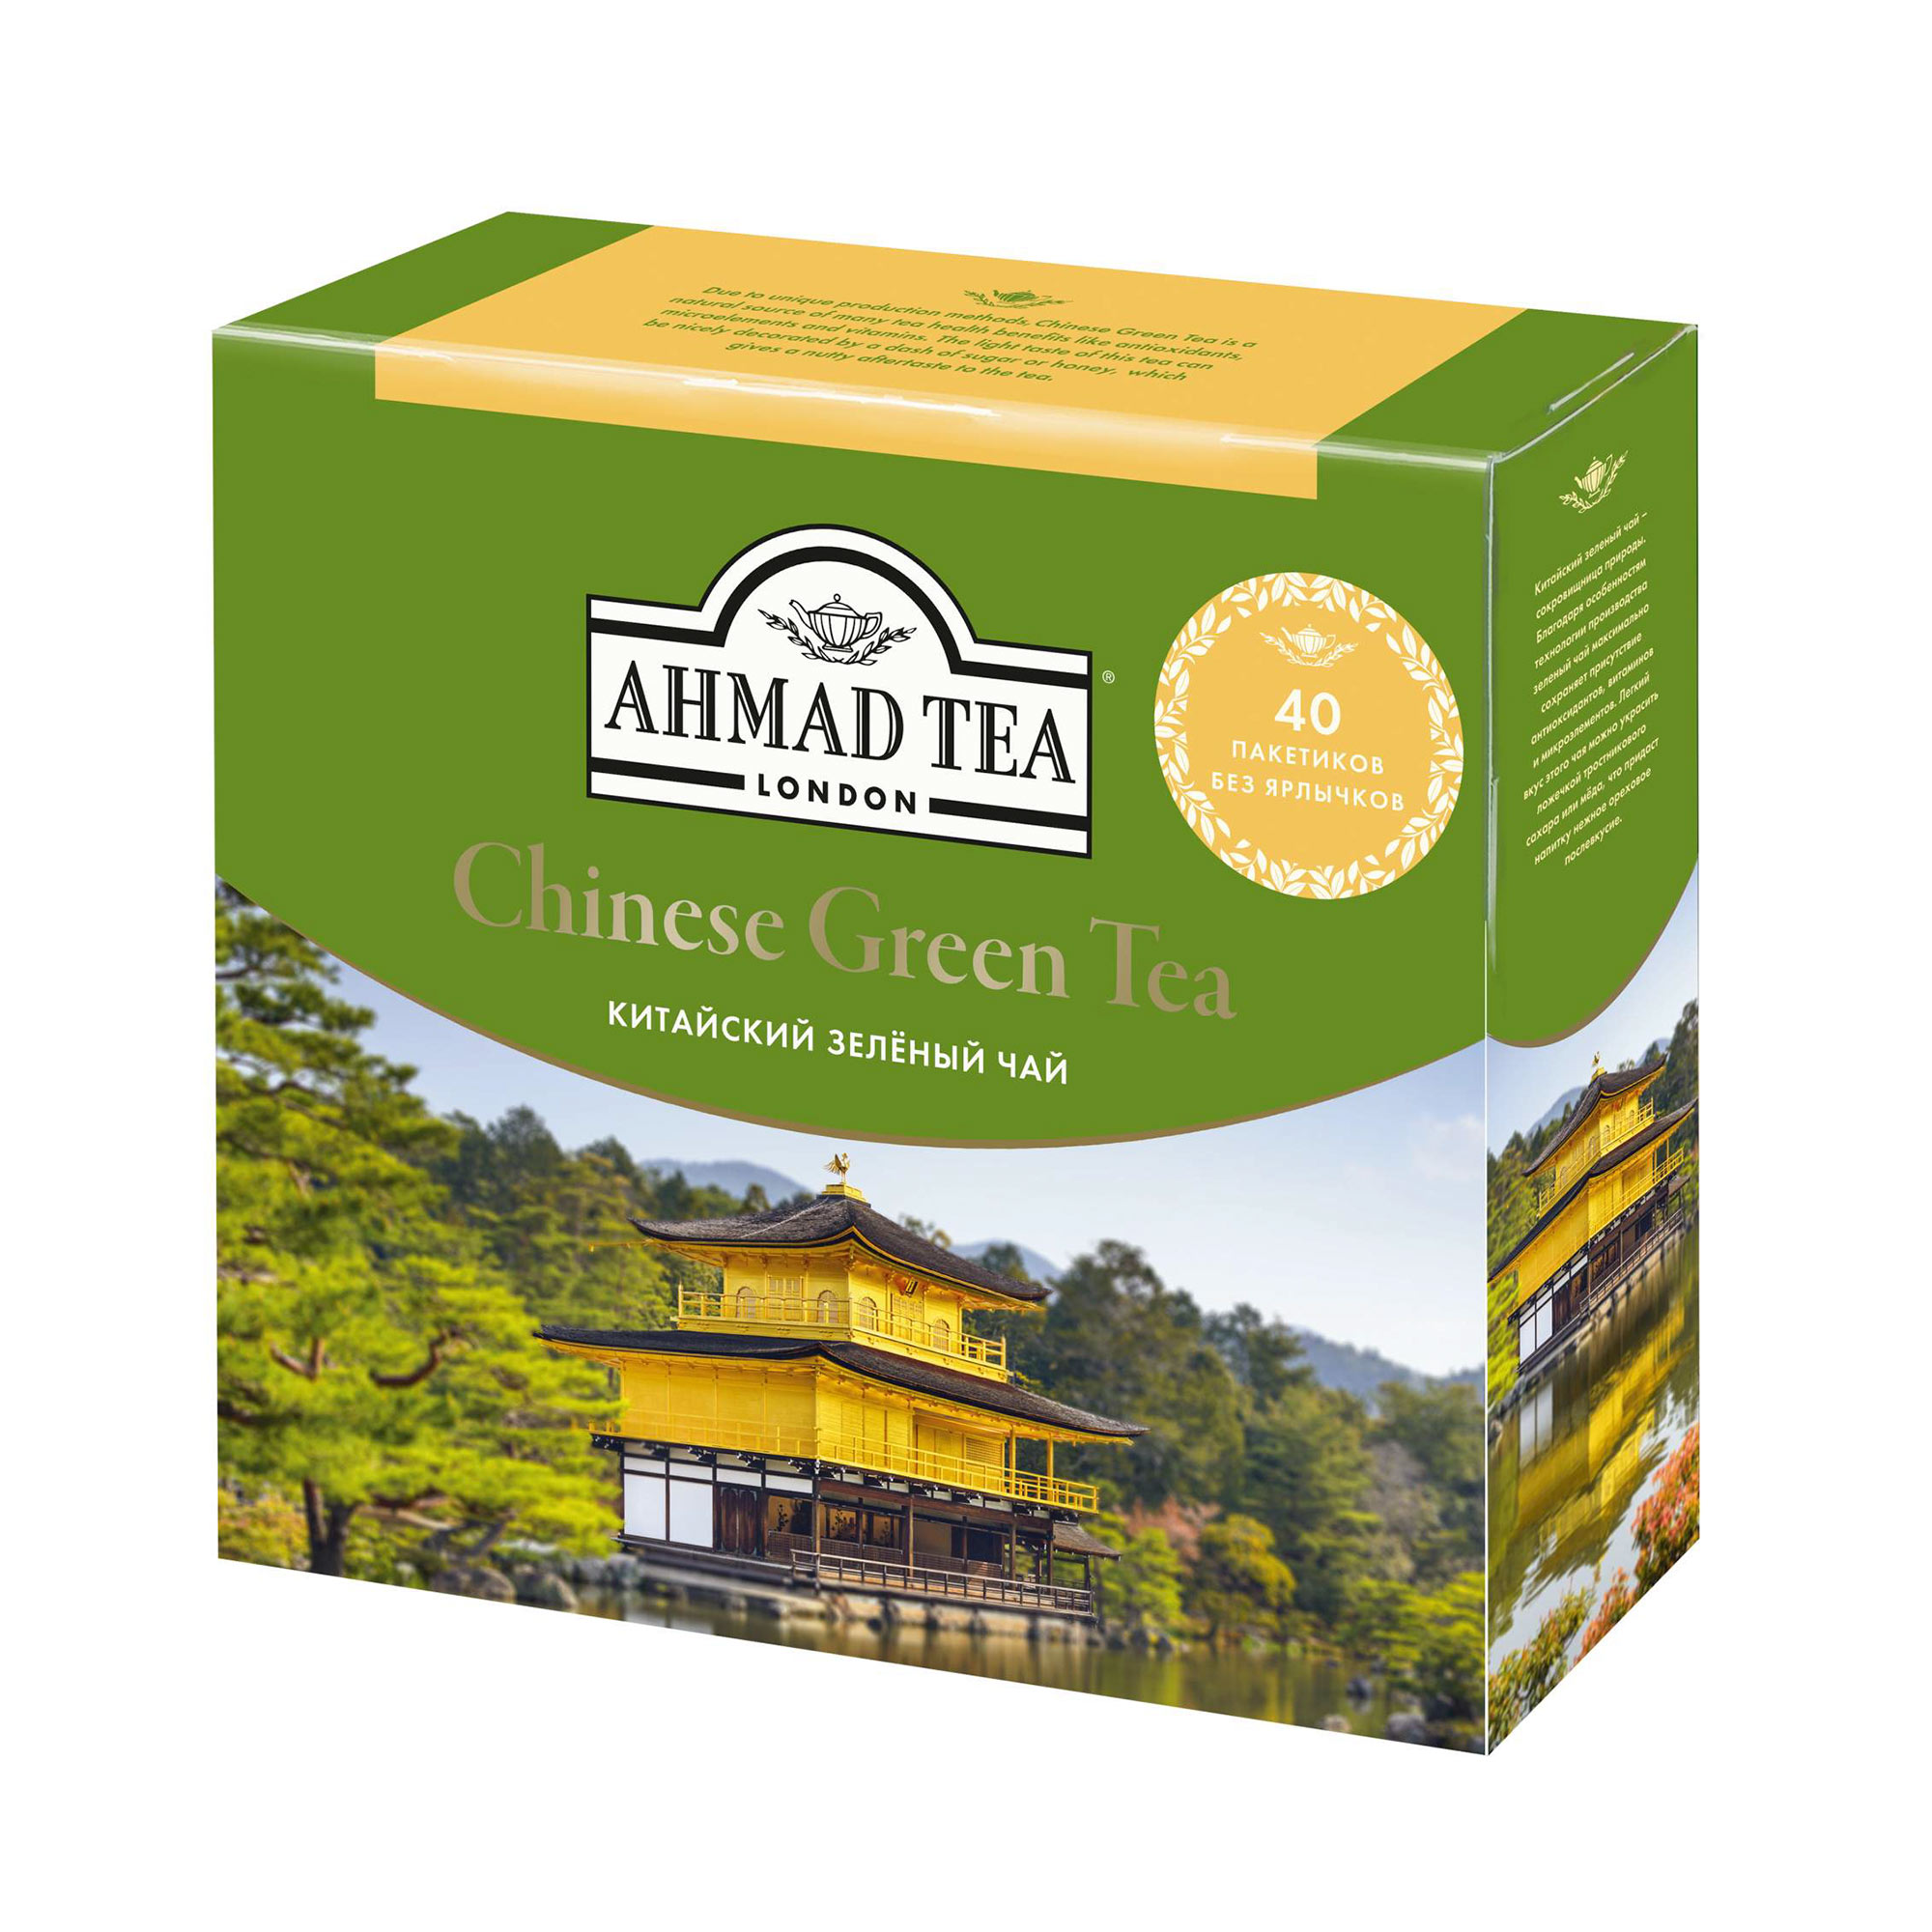 Чай зеленый Ahmad Tea Китайский 40х2 г ahmad ахмад английский завтрак листовой 200гр